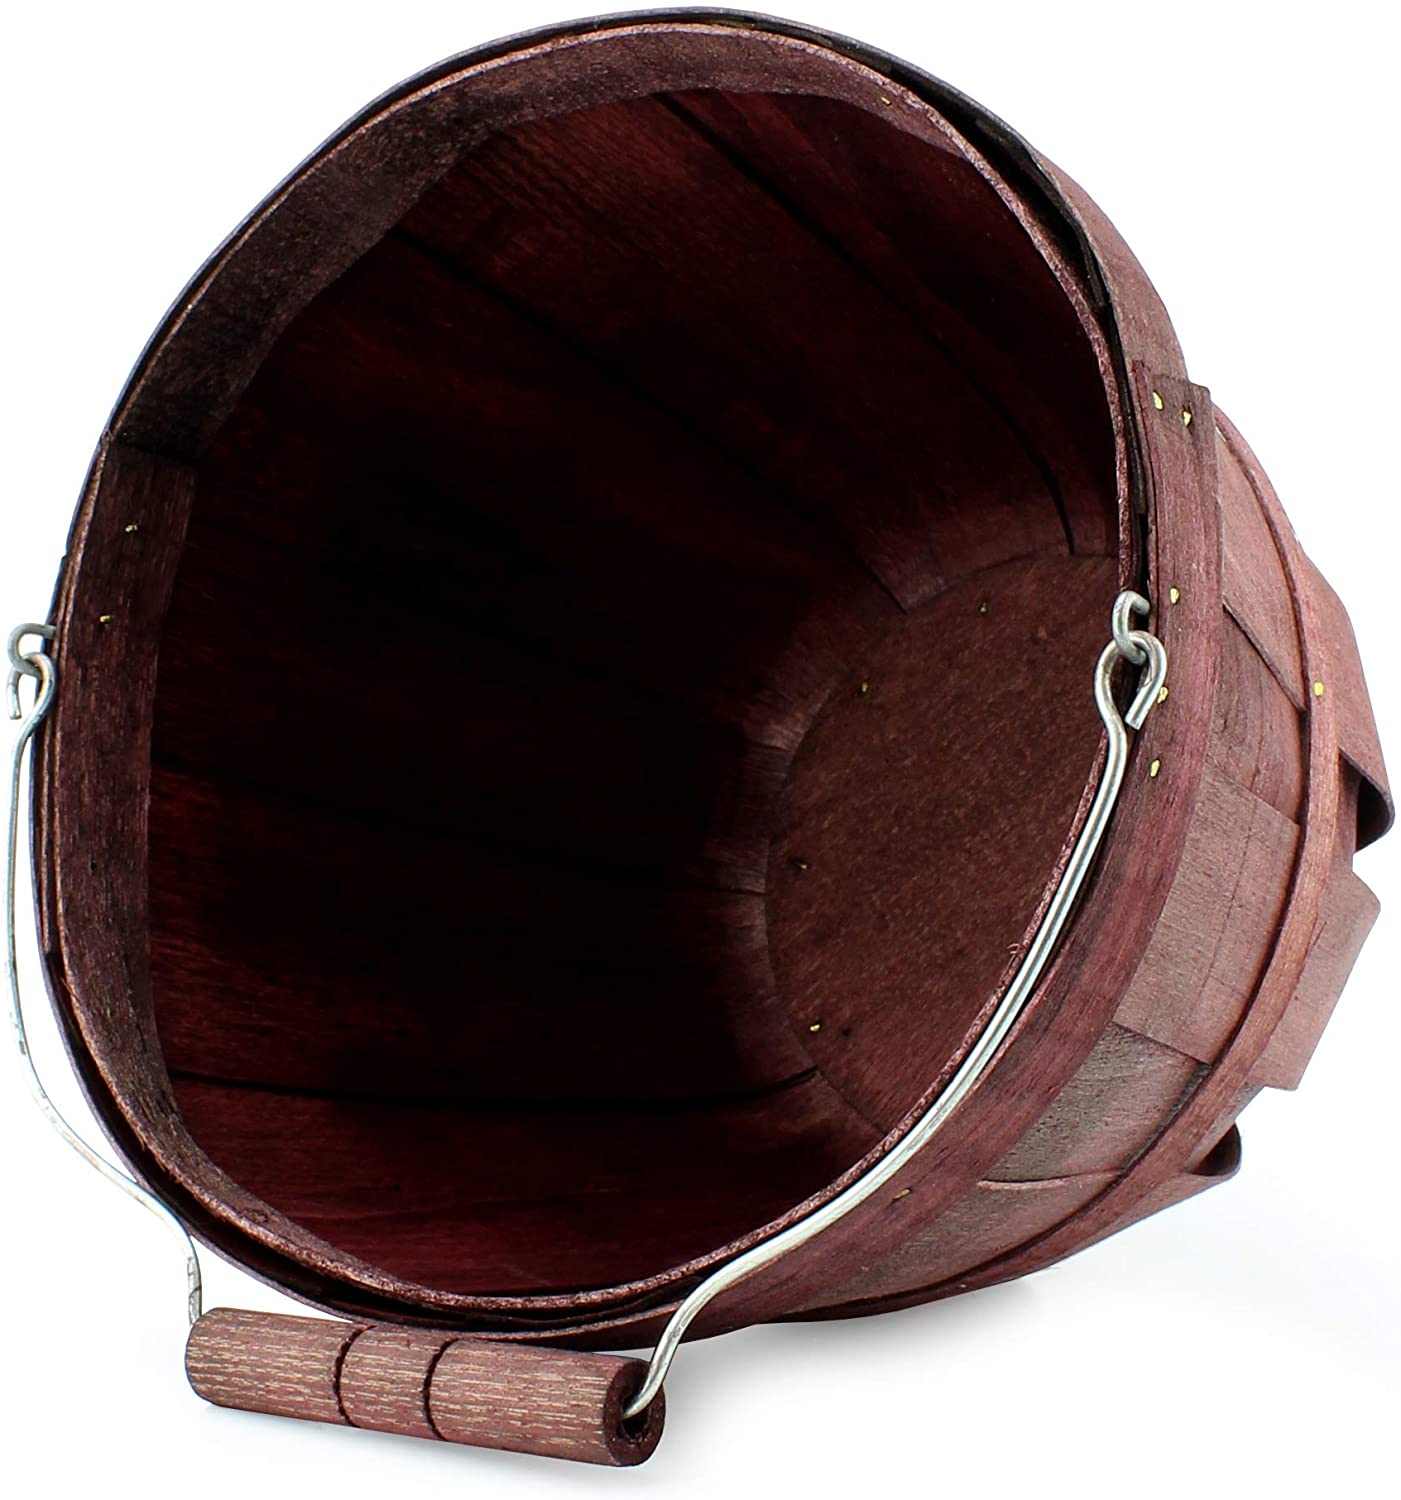 Round Wooden Baskets (2-Pack, Dark Brown) - sh1307cb0br